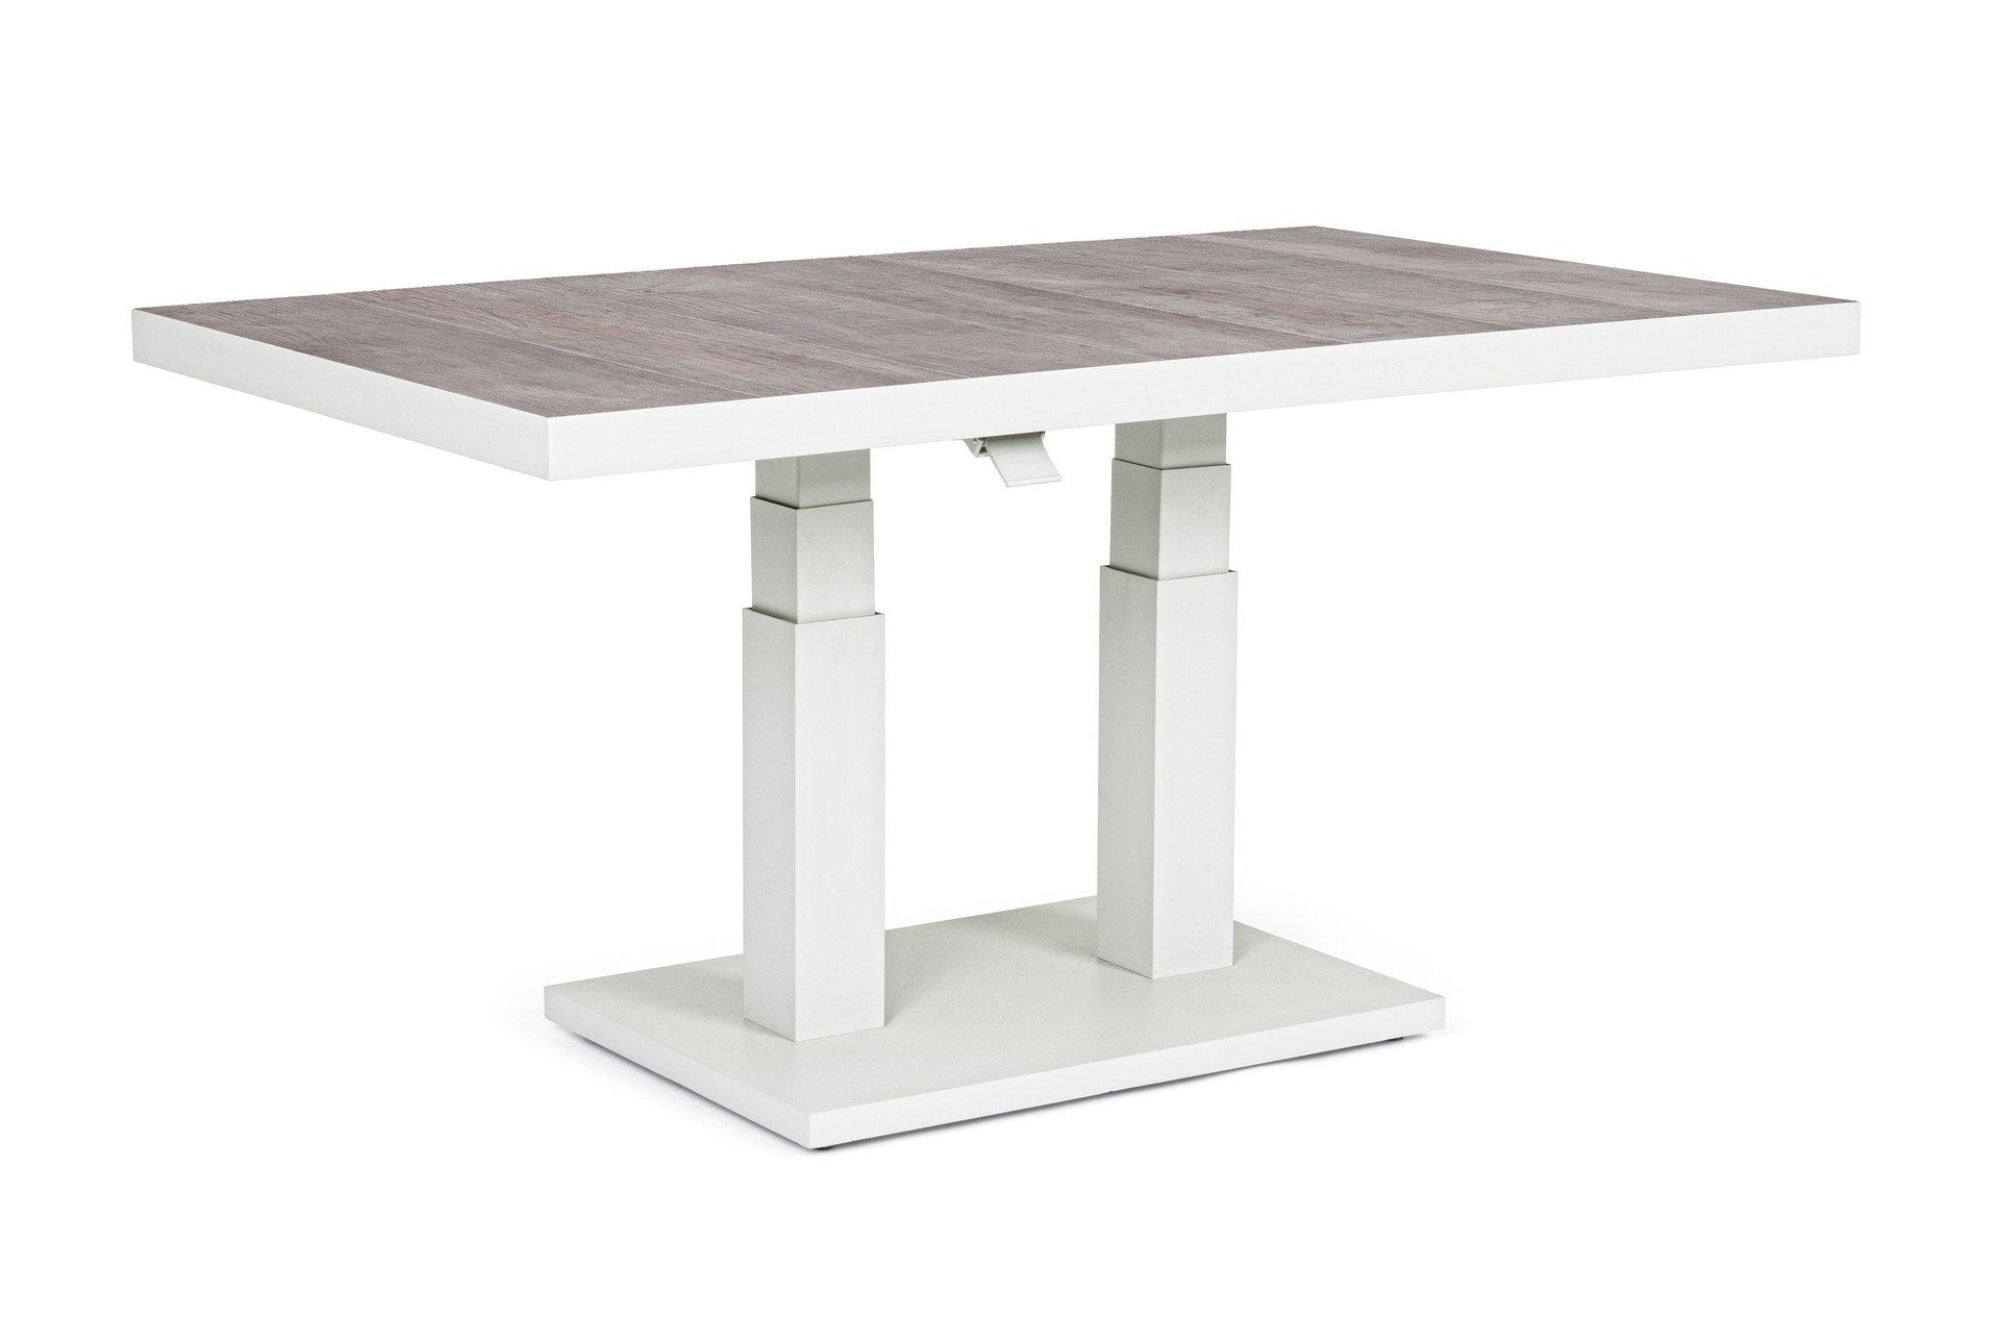 Truman Kerti állítható asztal, Bizzotto, 140 x 82 x 49-72 cm, alumínium, kerámia asztallap, szürke